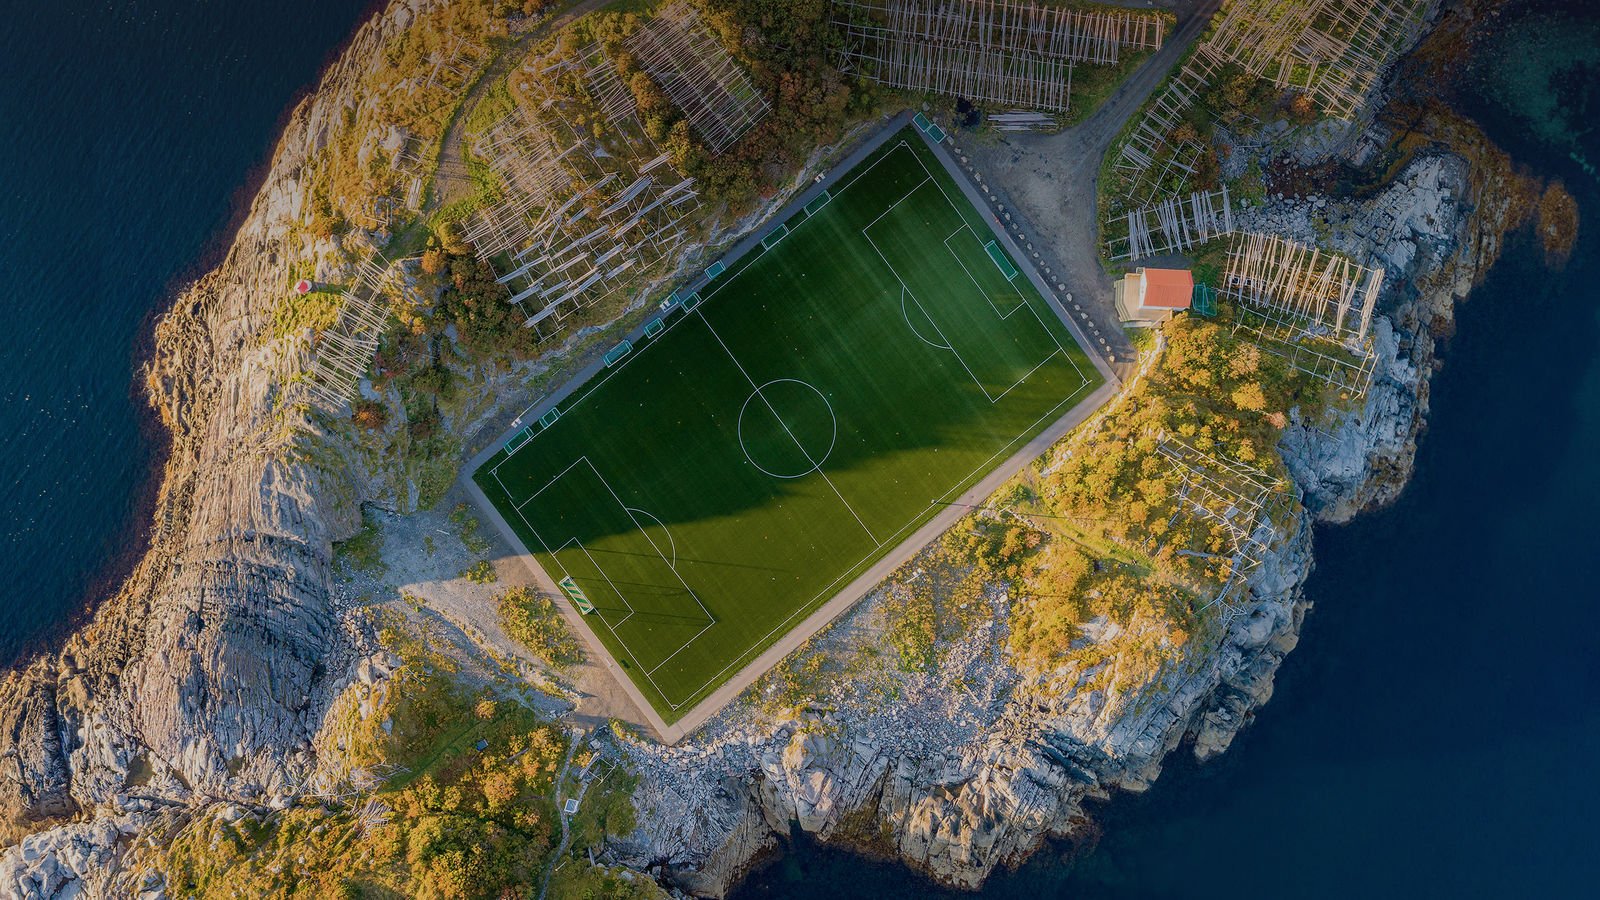 Стадион на острове. Стадион Хеннингсвер, Норвегия. Стадион на острове Хеннингсвер, Норвегия. Стадион на острове Хеннингсвер. Футбольное поле в горах.